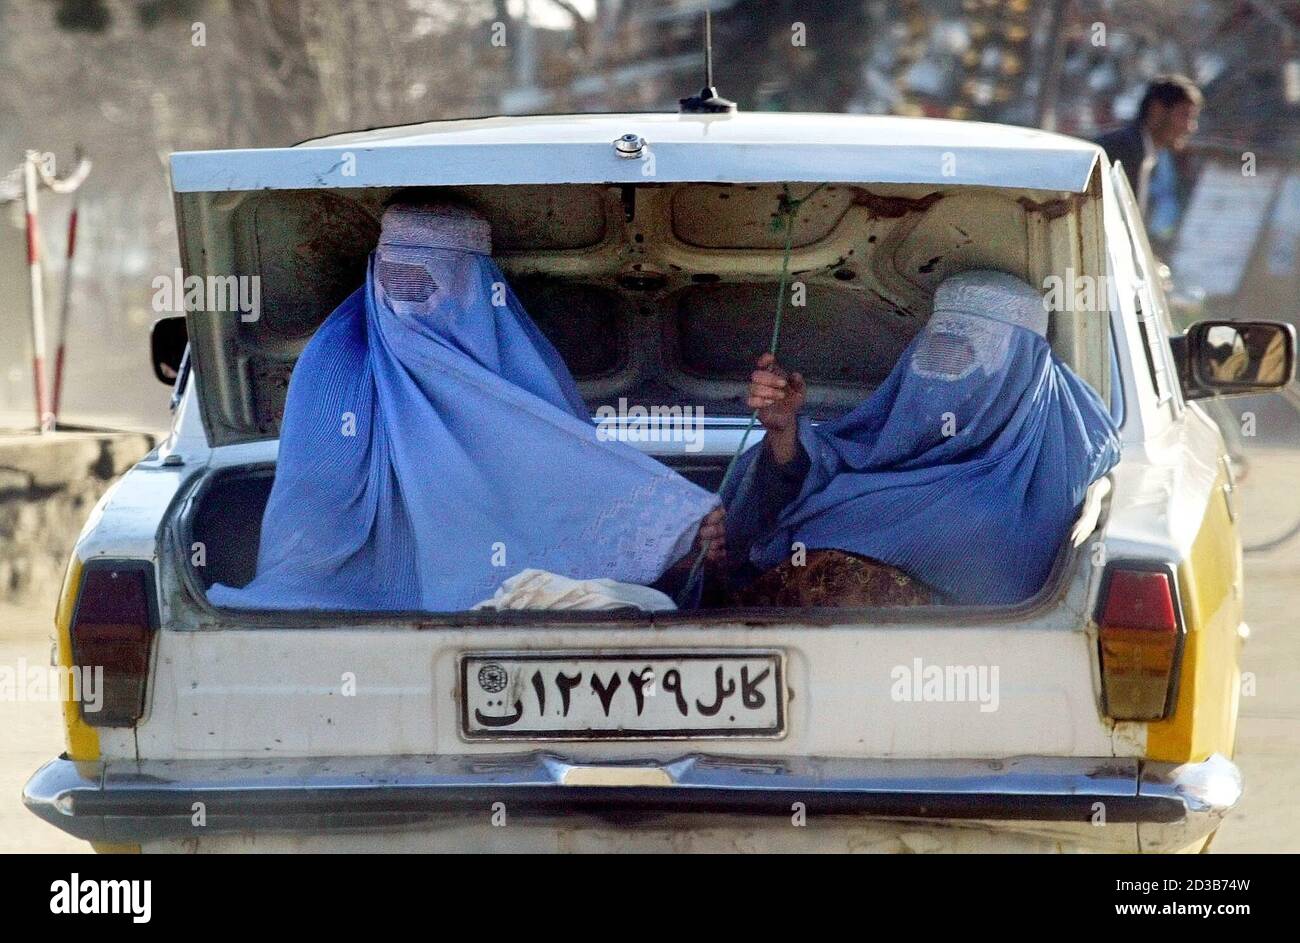 Le donne afghane velate cavalcano nel bagagliaio di un'auto a Charikar, a  nord di Kabul, il 18 febbraio 2003. Il burqa, che avvolge una donna dalla  testa ai piedi, è diventato un